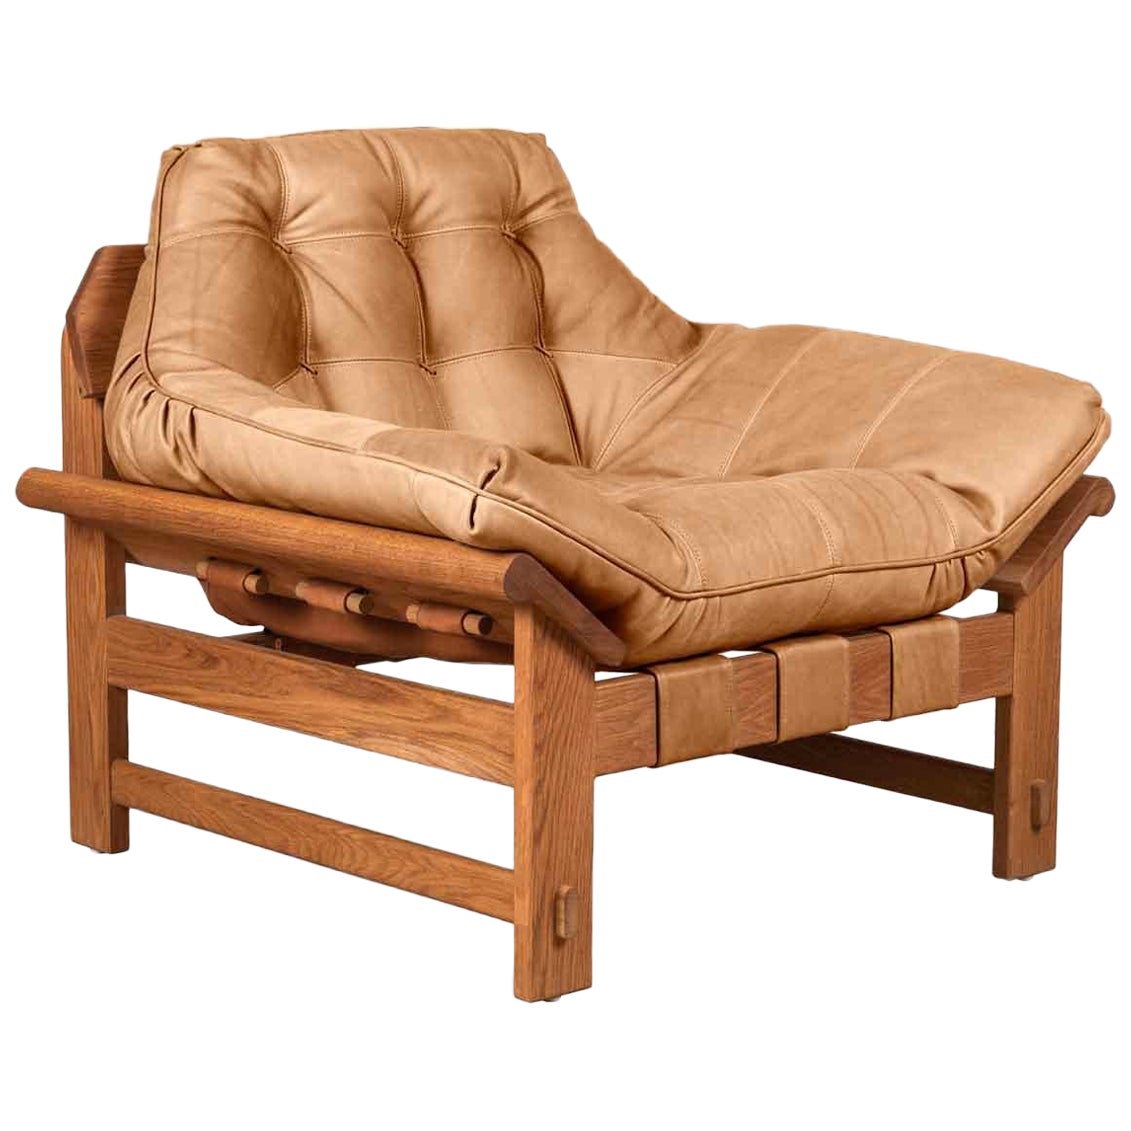 Chaise longue Ojai en cuir brun clair et chêne de Lawson-Fenning